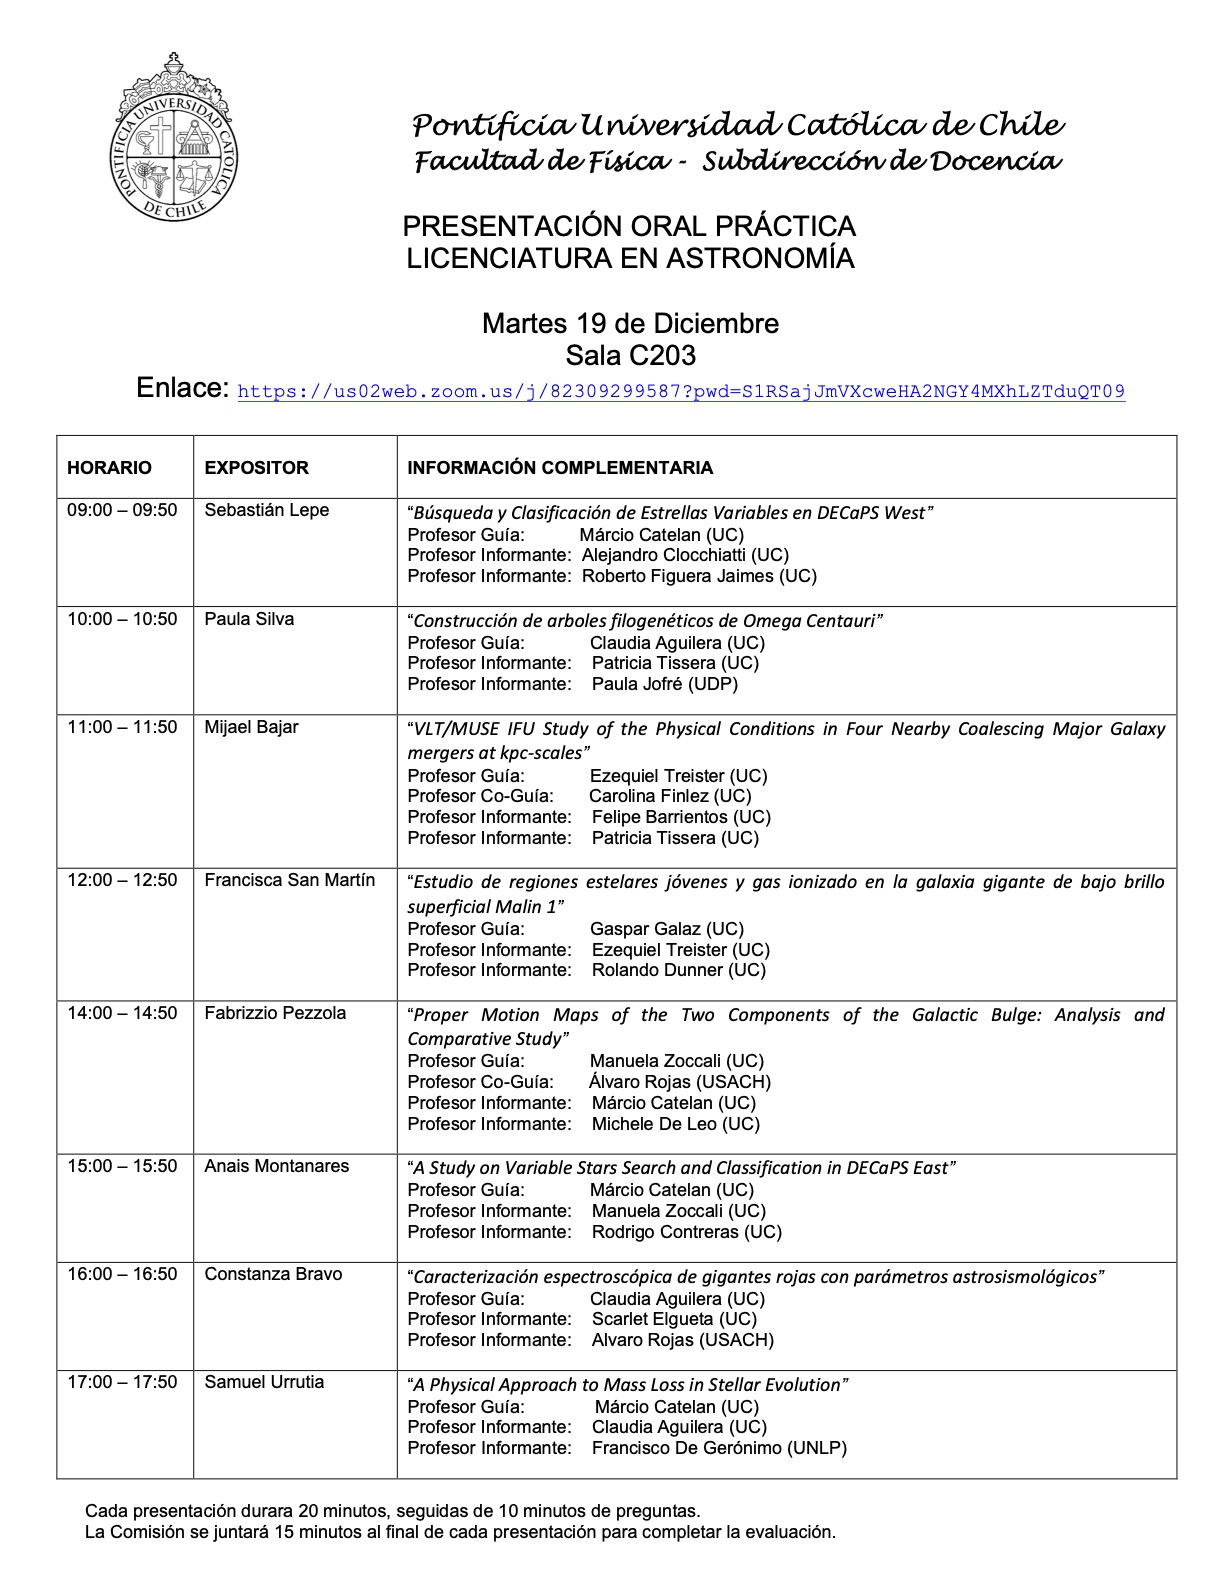 Presentaciones prácticas de Licenciatura en Astronomía (19.12.23) 